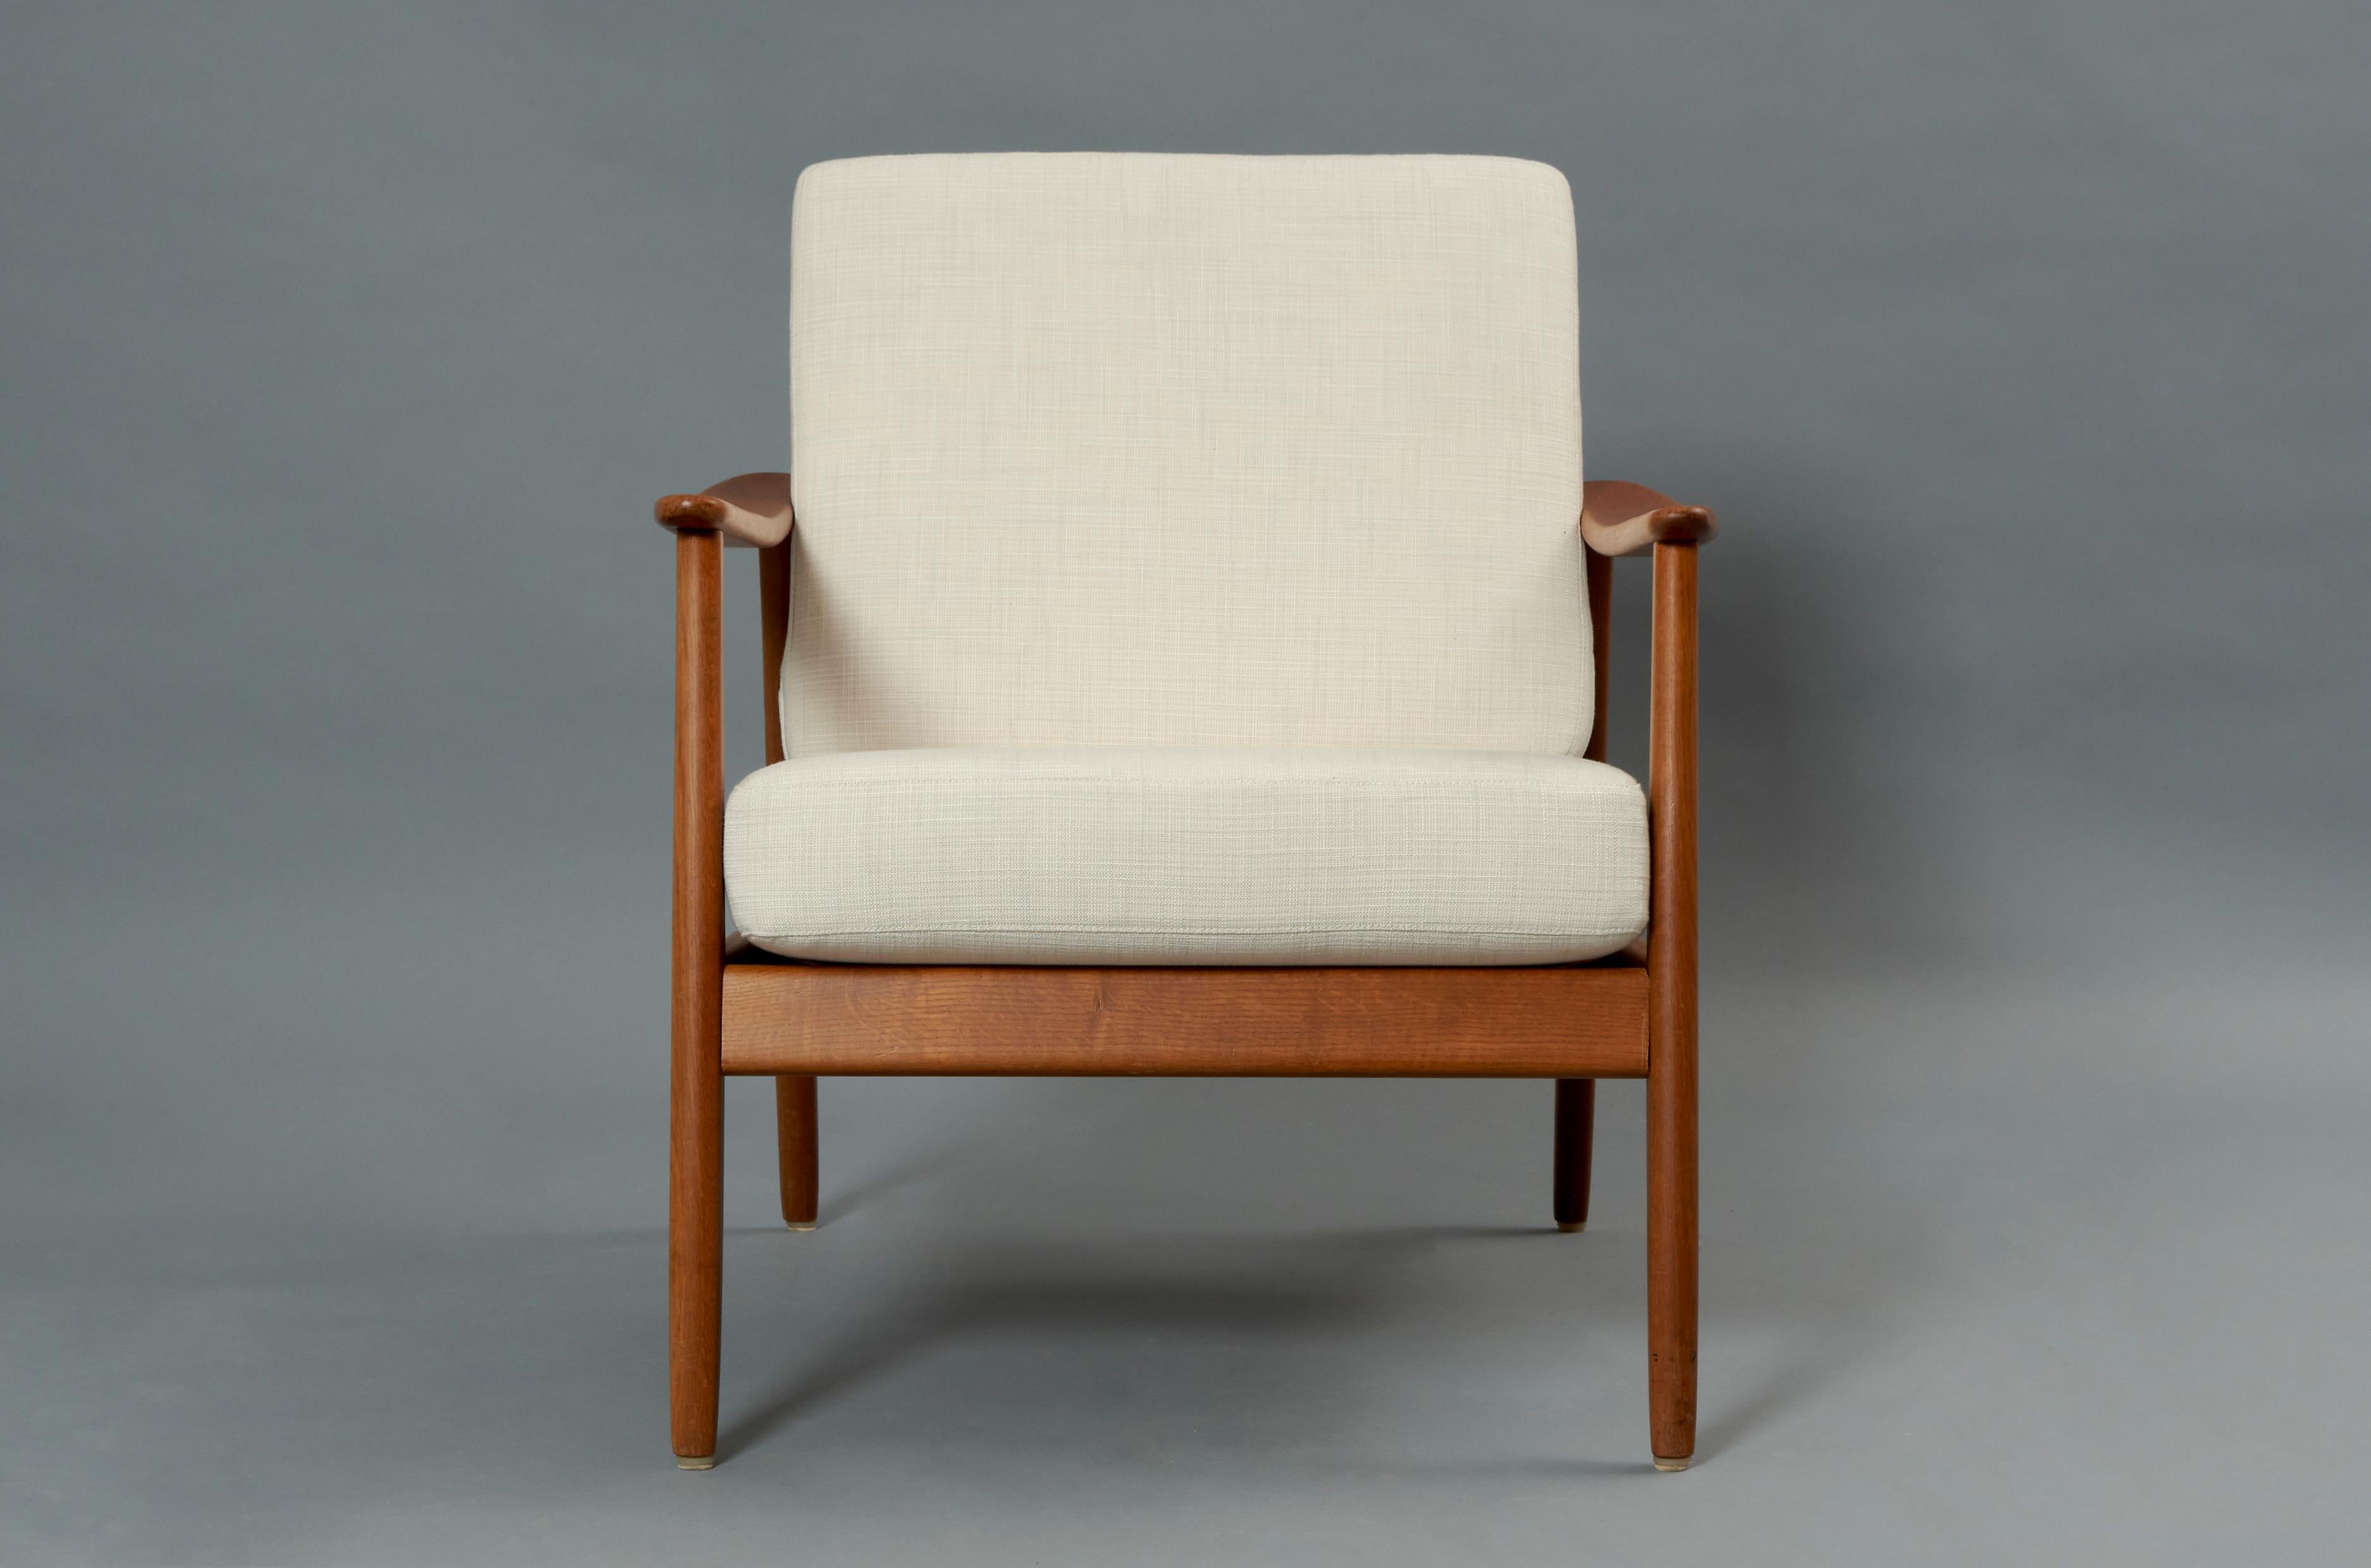 Sessel, entworfen von Folke Ohlsson für Dux, aus Teakholz und Rattan. Schweden, 1960er Jahre.

Hervorragender restaurierter und neu gepolsterter Zustand, der jedoch Spuren von Zeit und Gebrauch aufweisen kann. 

Folke Ohlsson war ein schwedischer